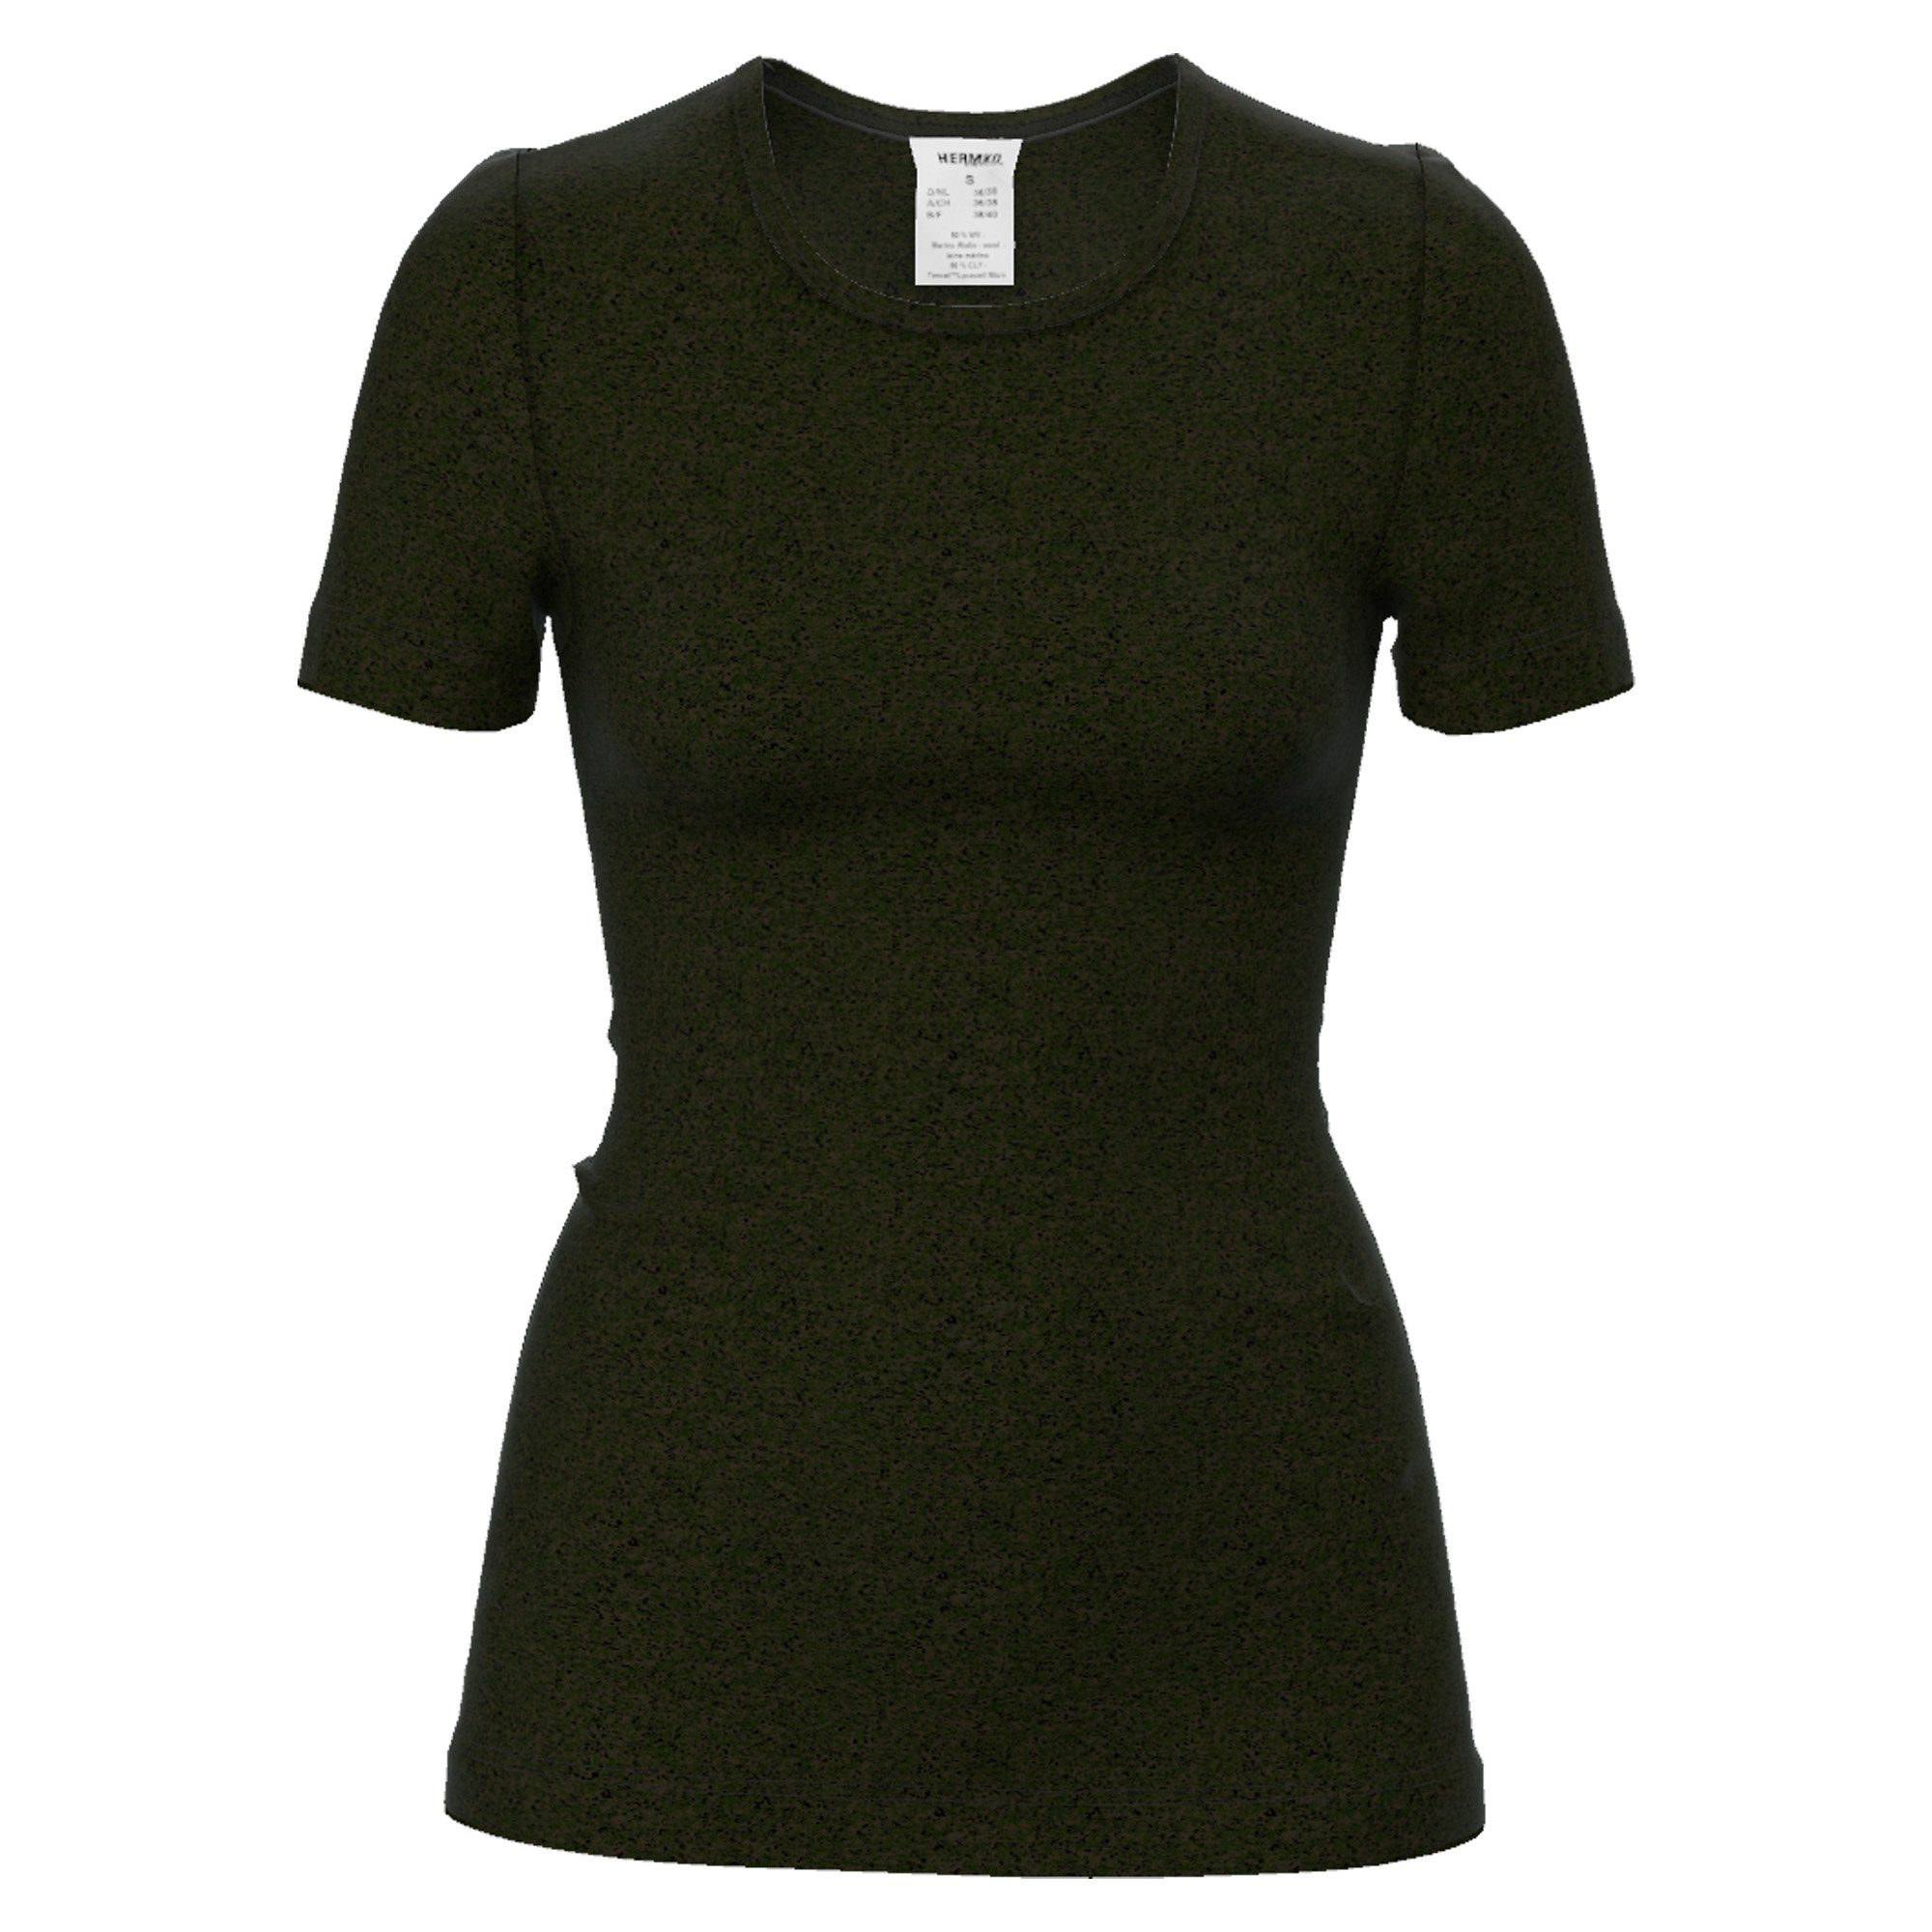 HERMKO Unterhemd 40800 Damen kurzarm Unterhemd mit Rundhals-Ausschnitt aus Wolle/Tencel schwarz